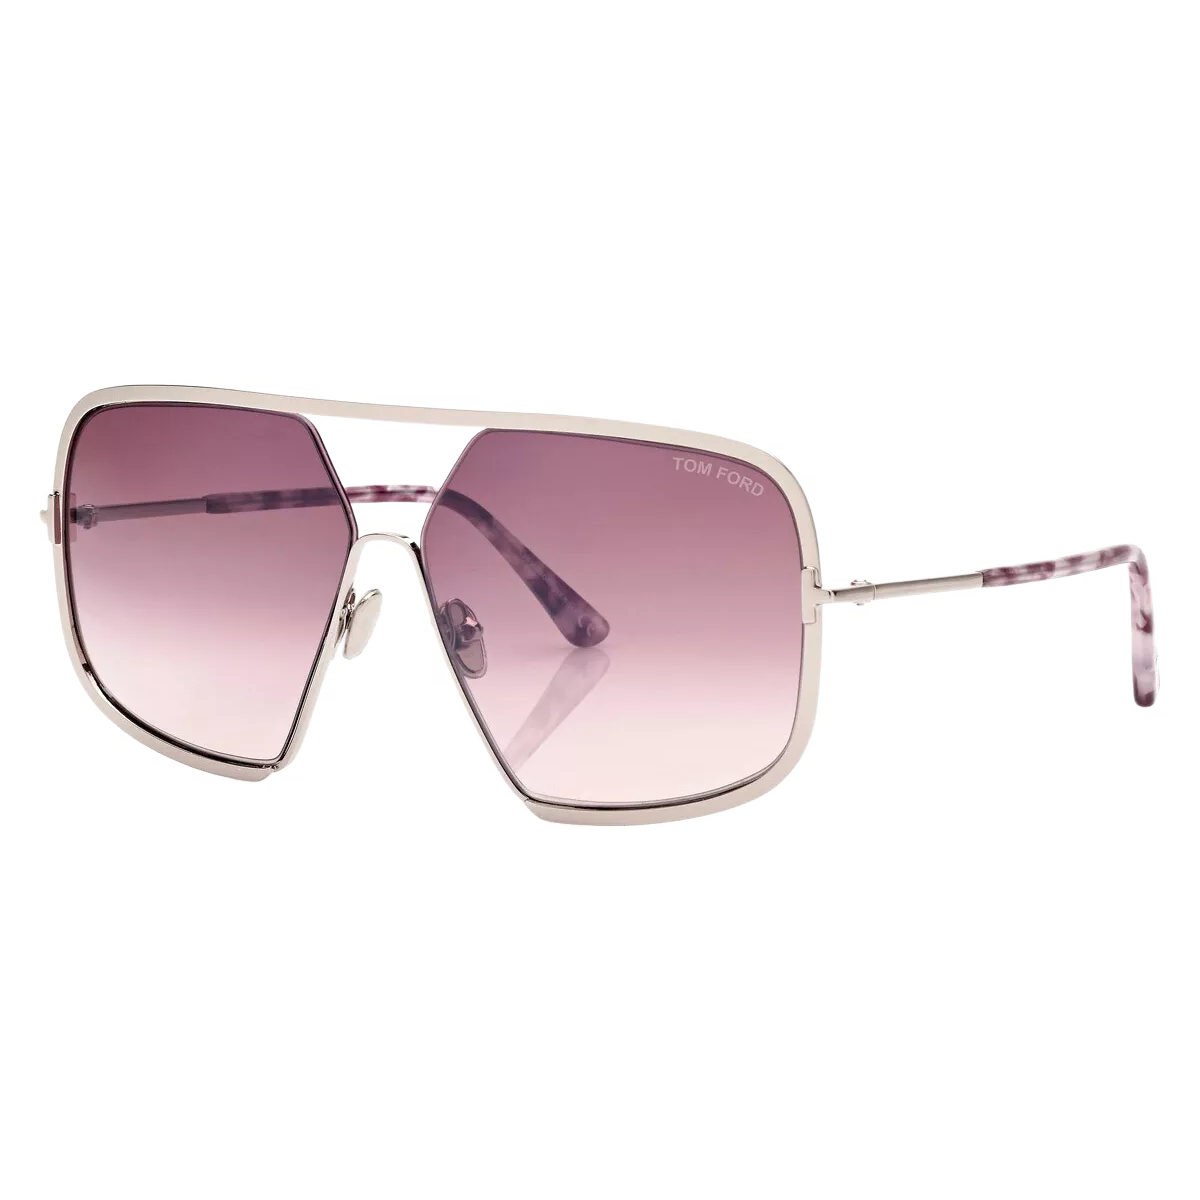 Tom Ford Sunglasses Tom Ford Sunglasses FT0867 16Z 63mm Warrren Eyeglasses Eyewear UK USA Australia 